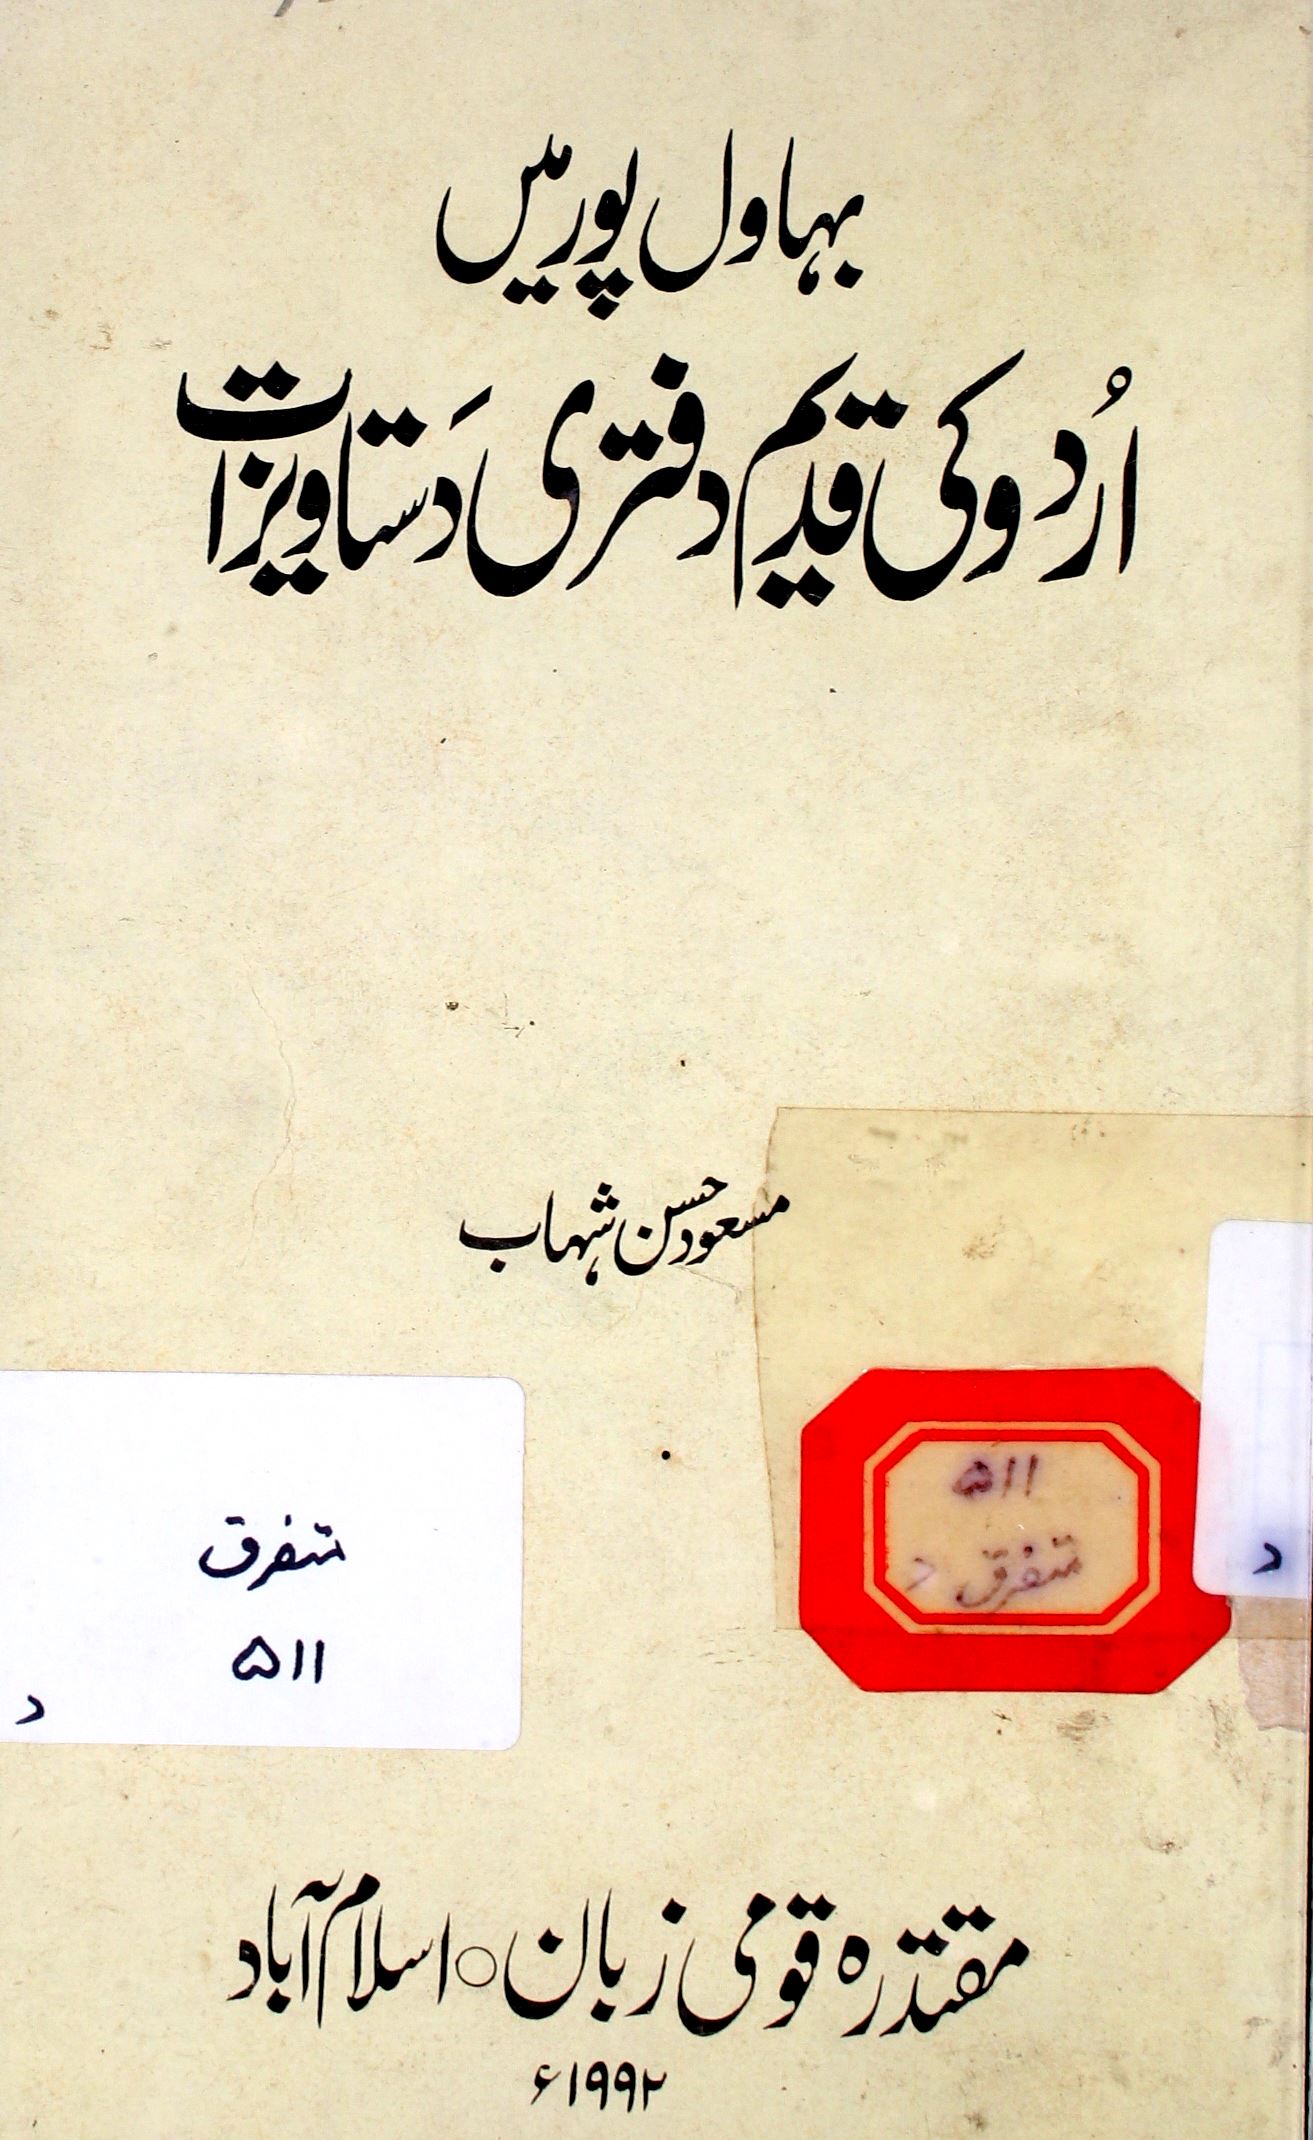 بہاول پور میں اردو کی قدیم دفتری دستاویزات